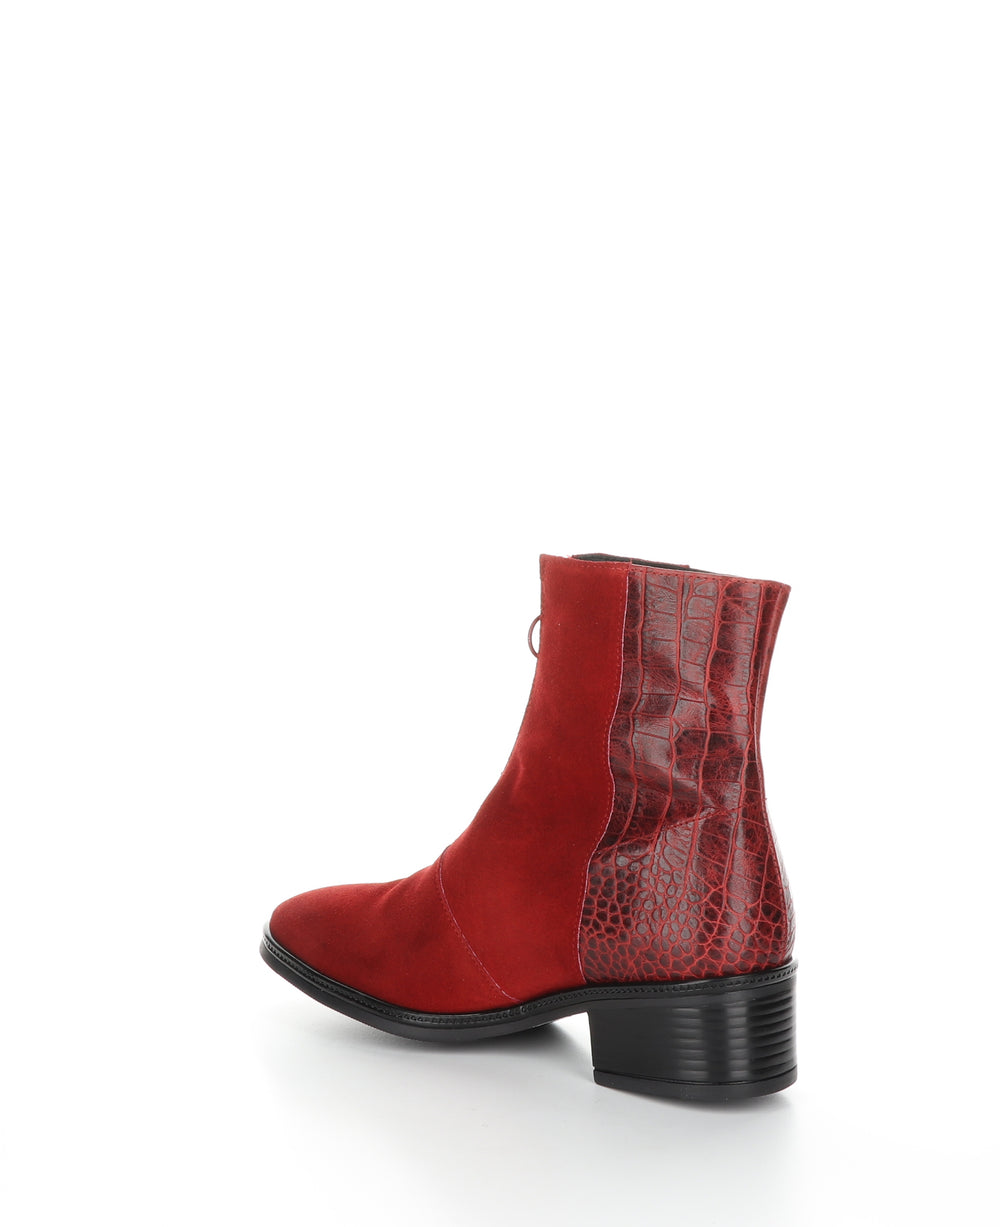 JORDON Red Zip Up Ankle Boots|JORDON Bottines avec Fermeture Zippée in Rouge